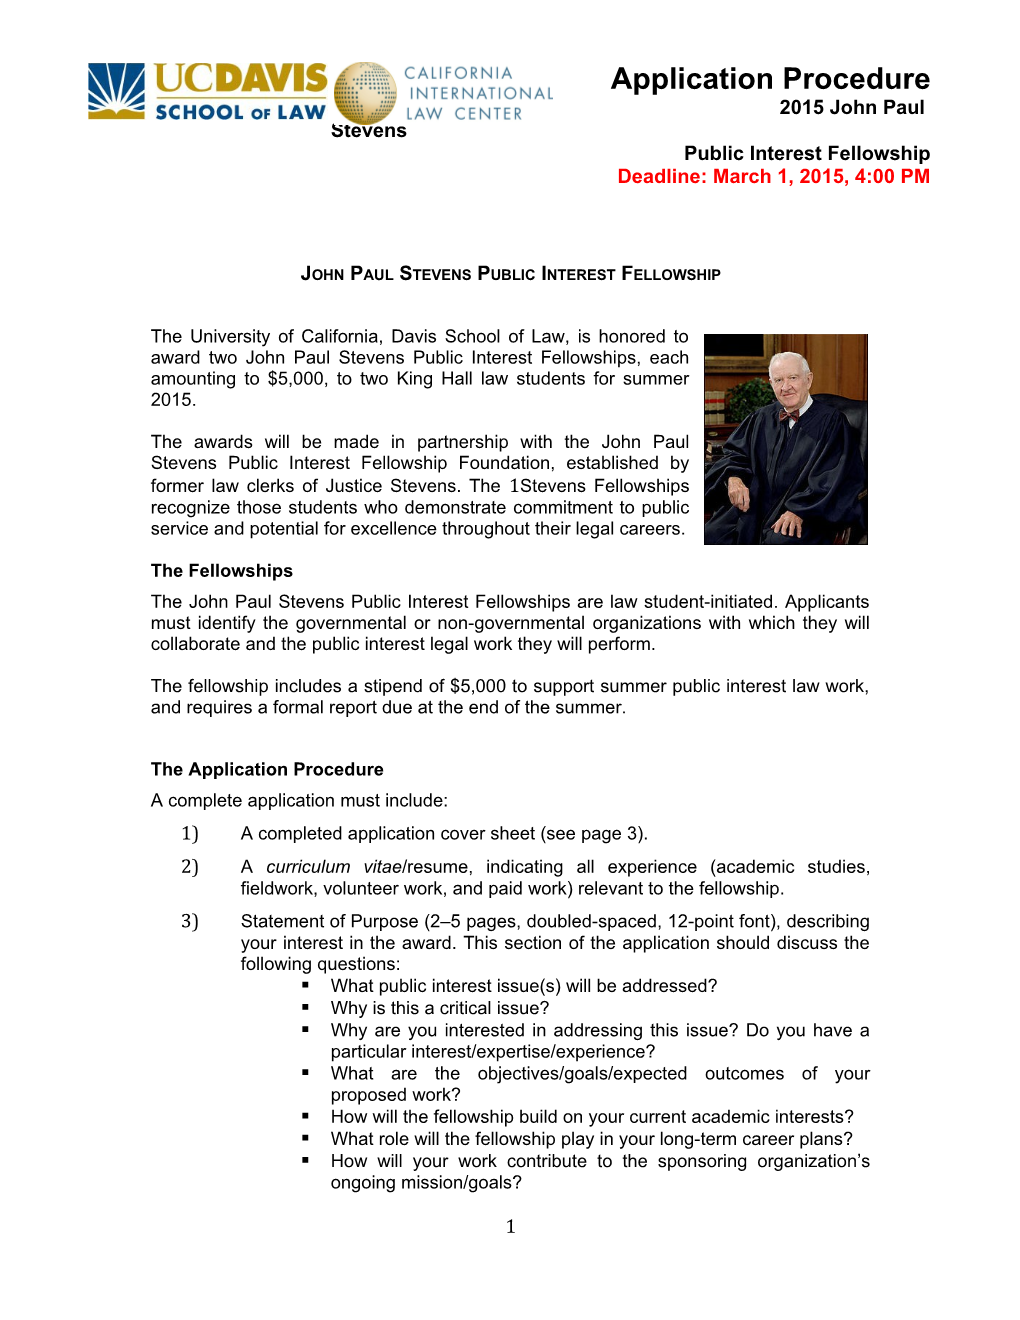 John Paul Stevens Public Interest Fellowship